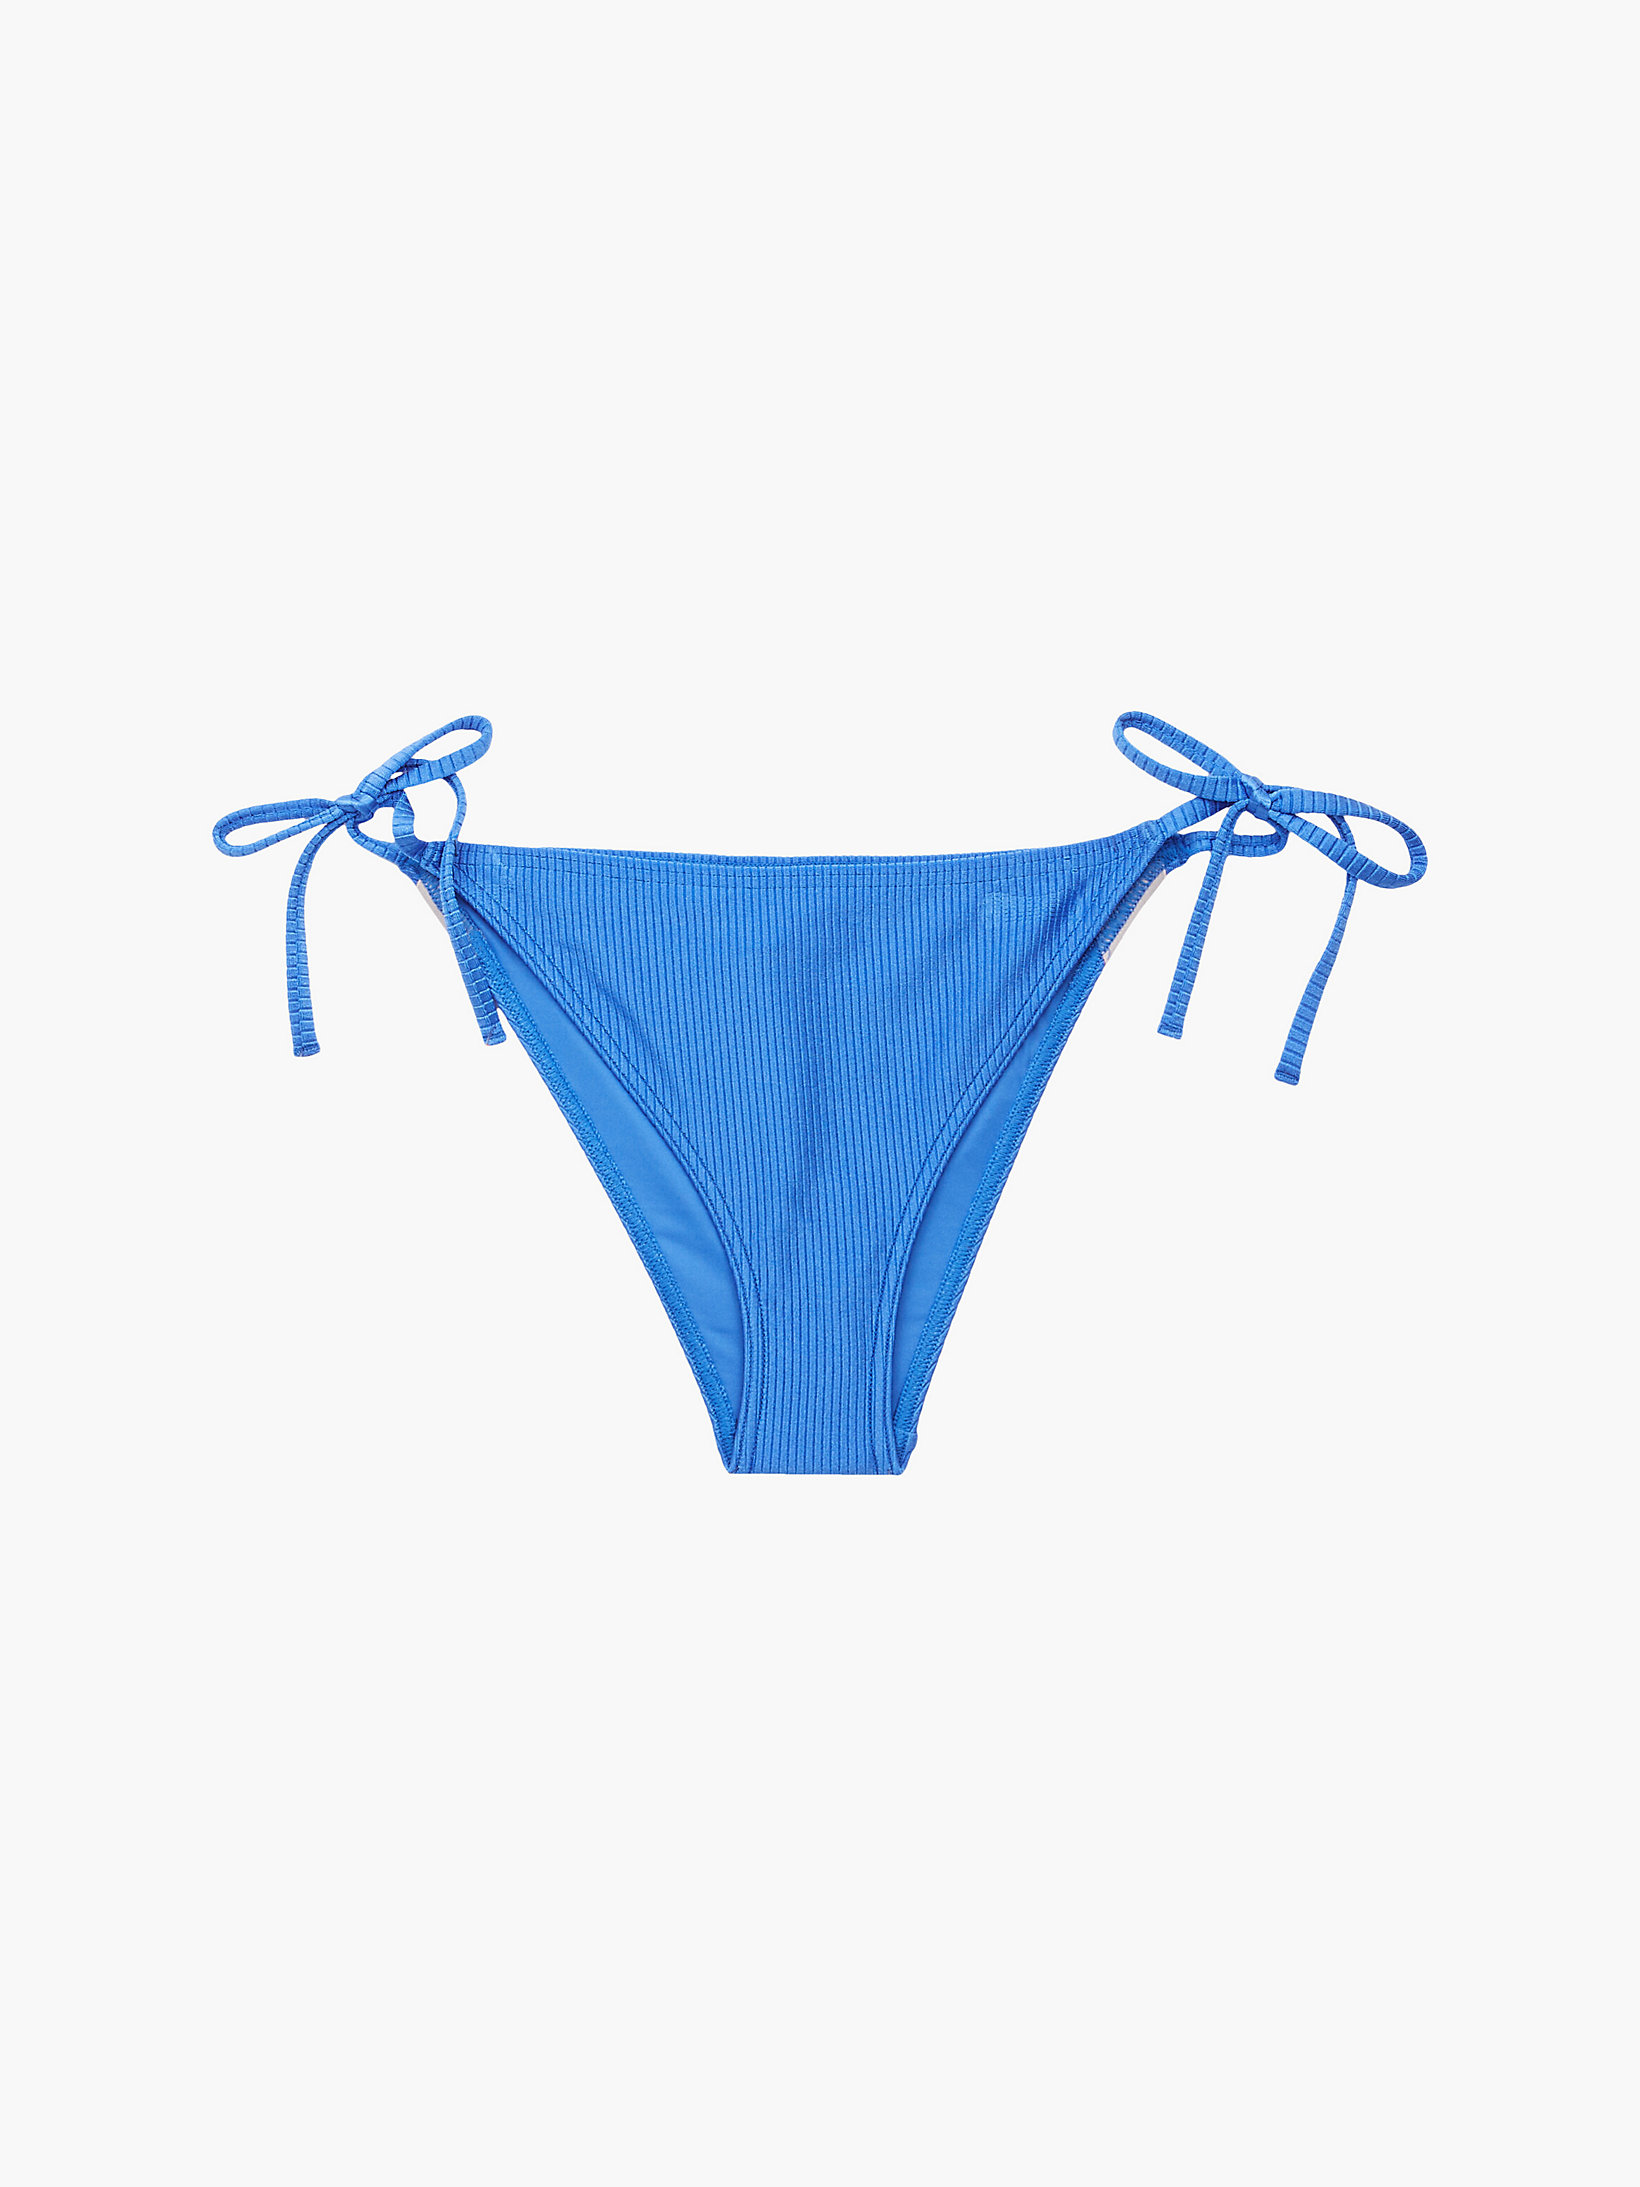 Slip Bikini Con Laccetti - Intense Power > Corrib River Blue > undefined donna > Calvin Klein